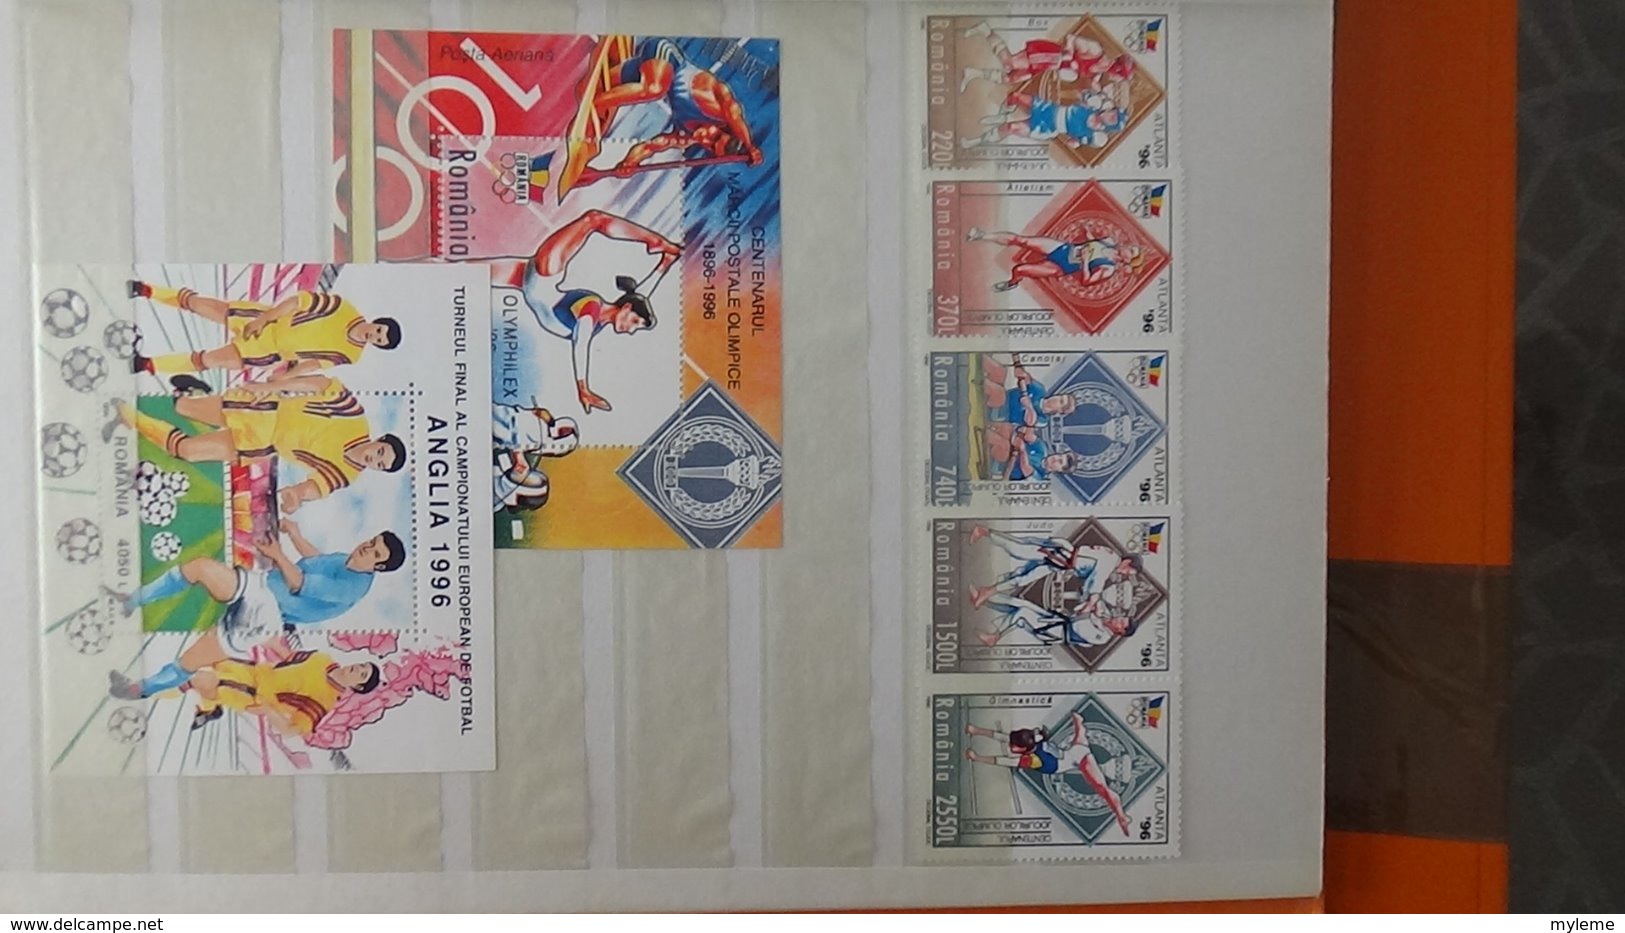 Petite collection de ROUMANIE entre 1994 et 1996 en timbres et blocs ** . A saisir !!!